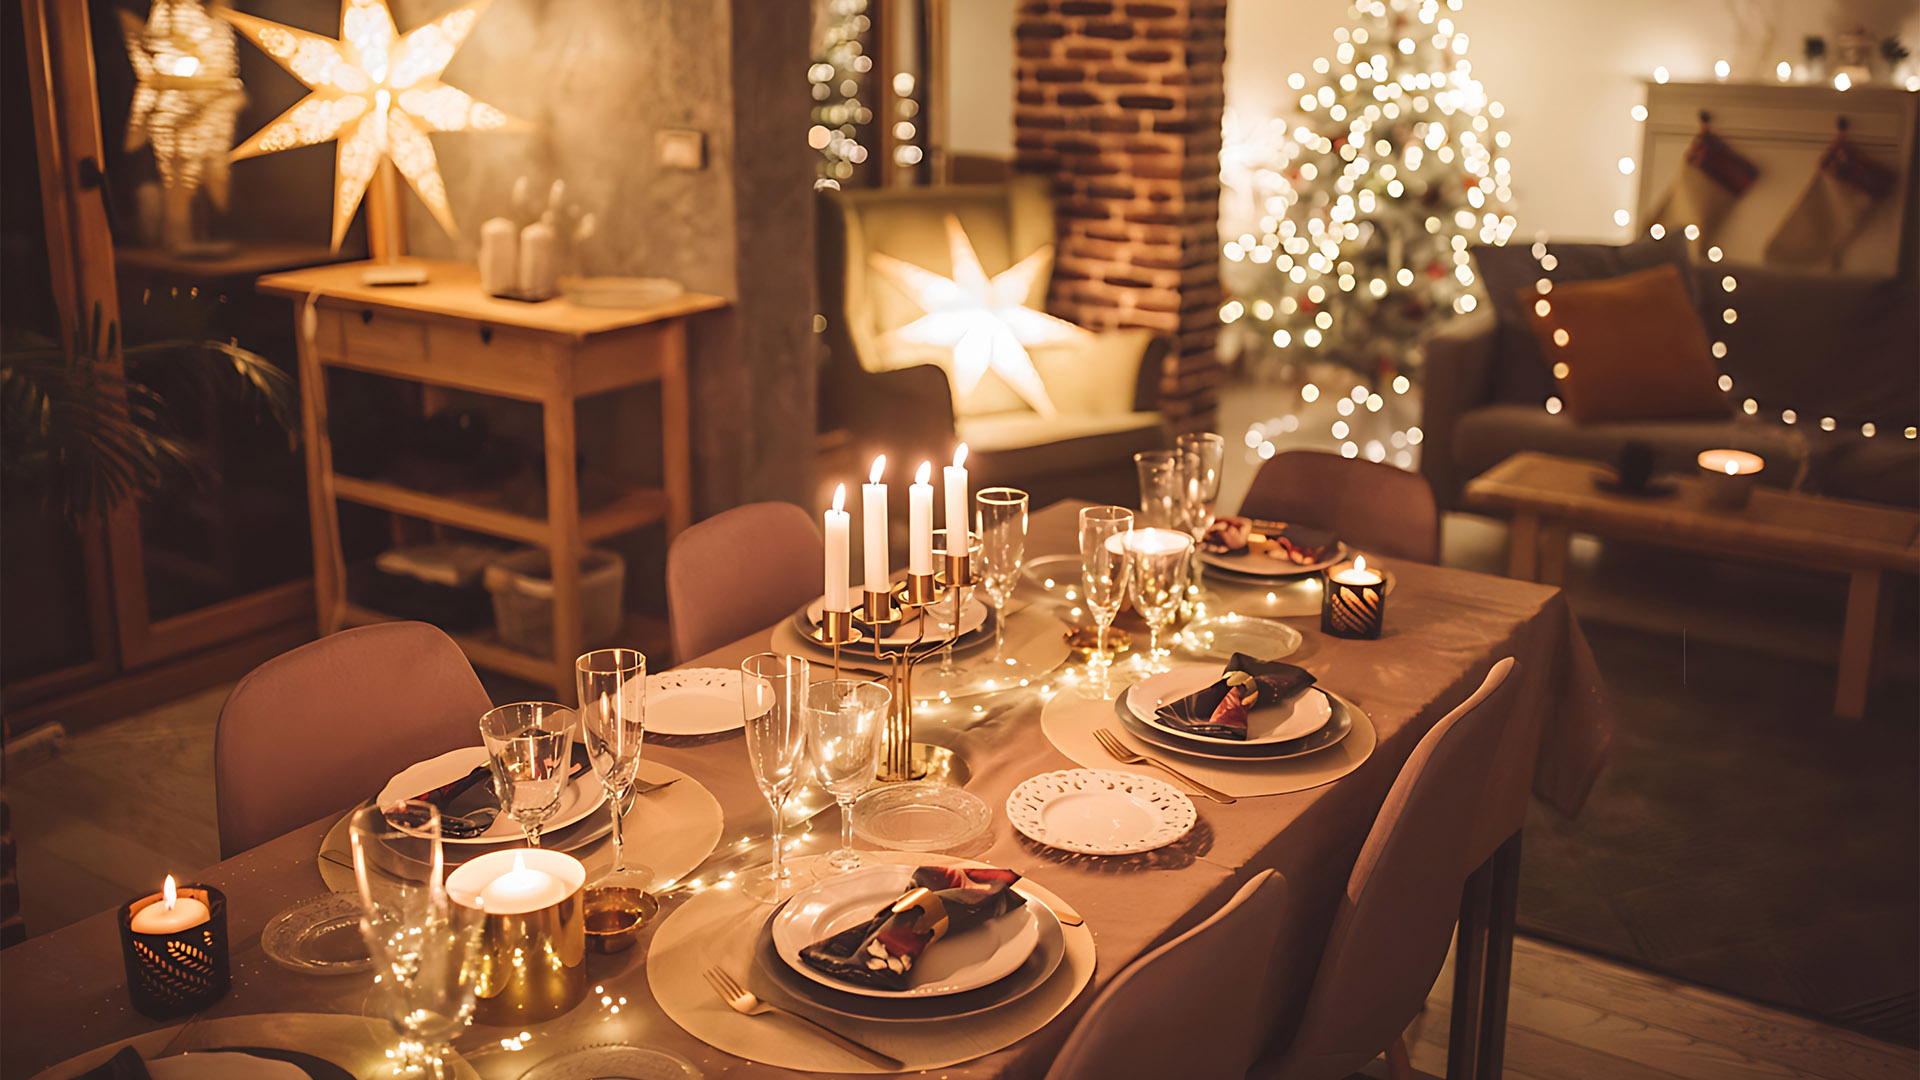 Mesa de Jantar com decorações de Natal. A mesa encontra-se numa sala de jantar também decorada com objetos de Natal.